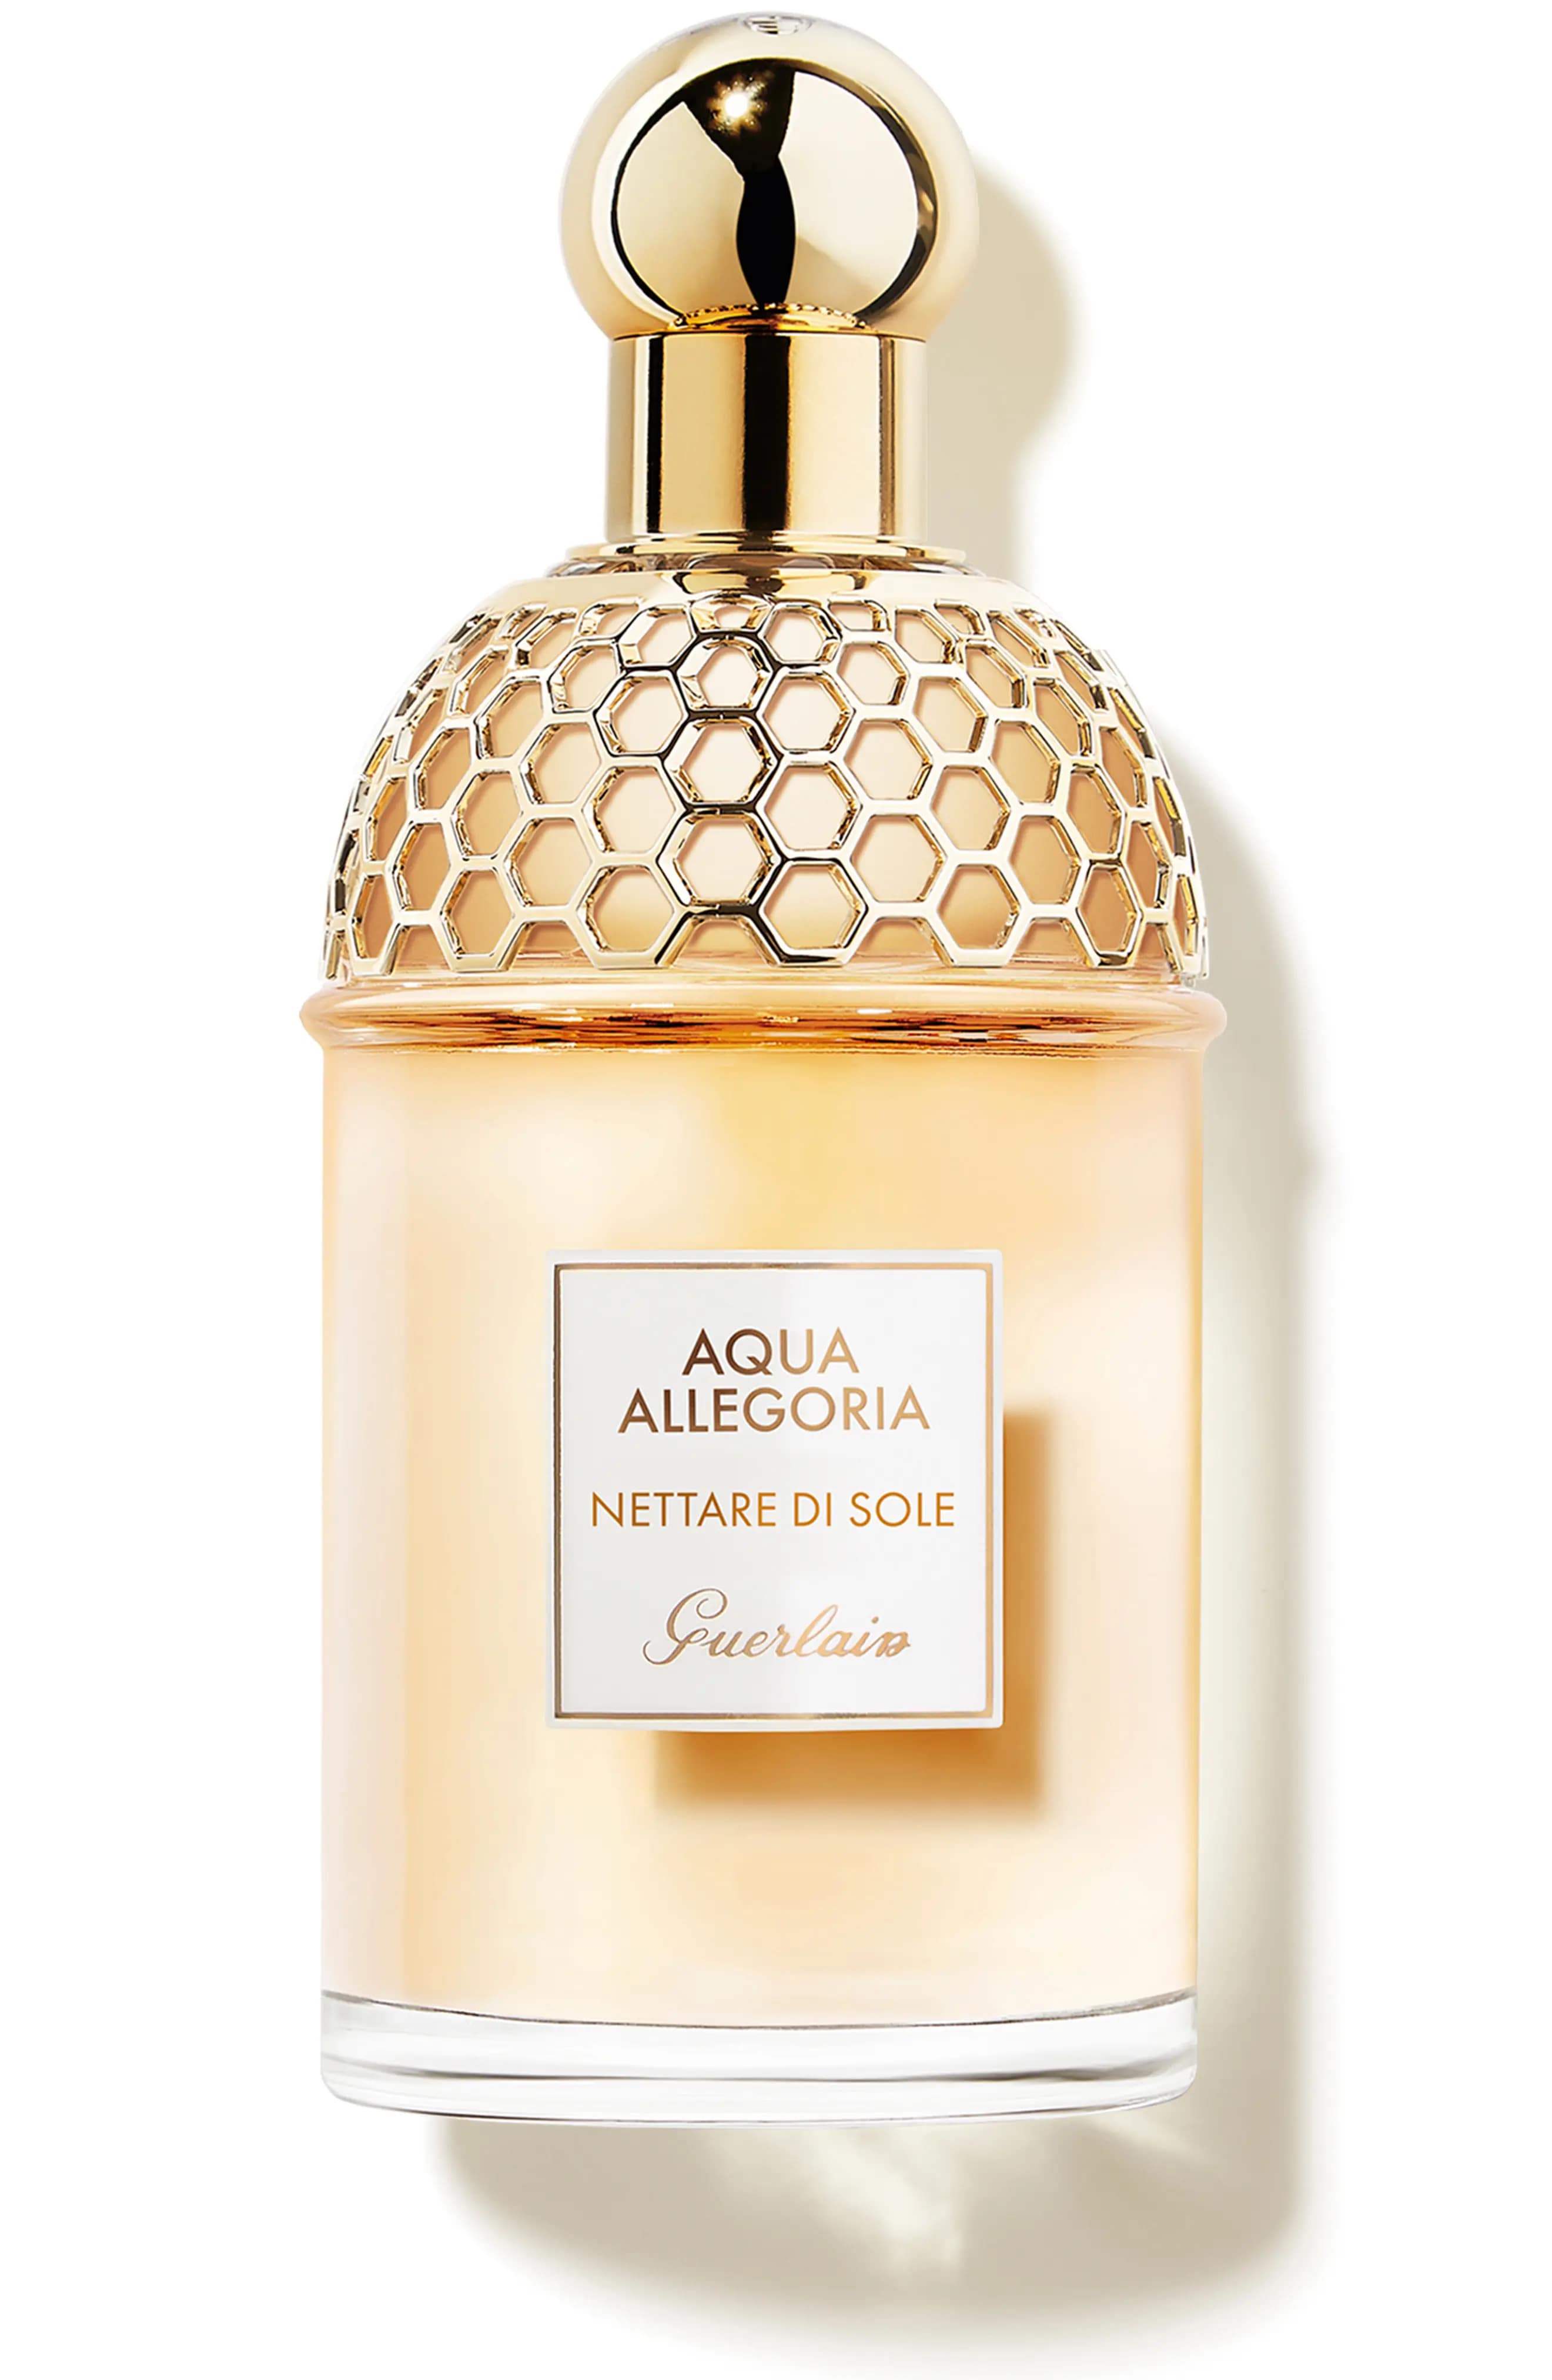 Aqua Allegoria Nettare di Sole EDT Spray Perfume for Women by Guerlain